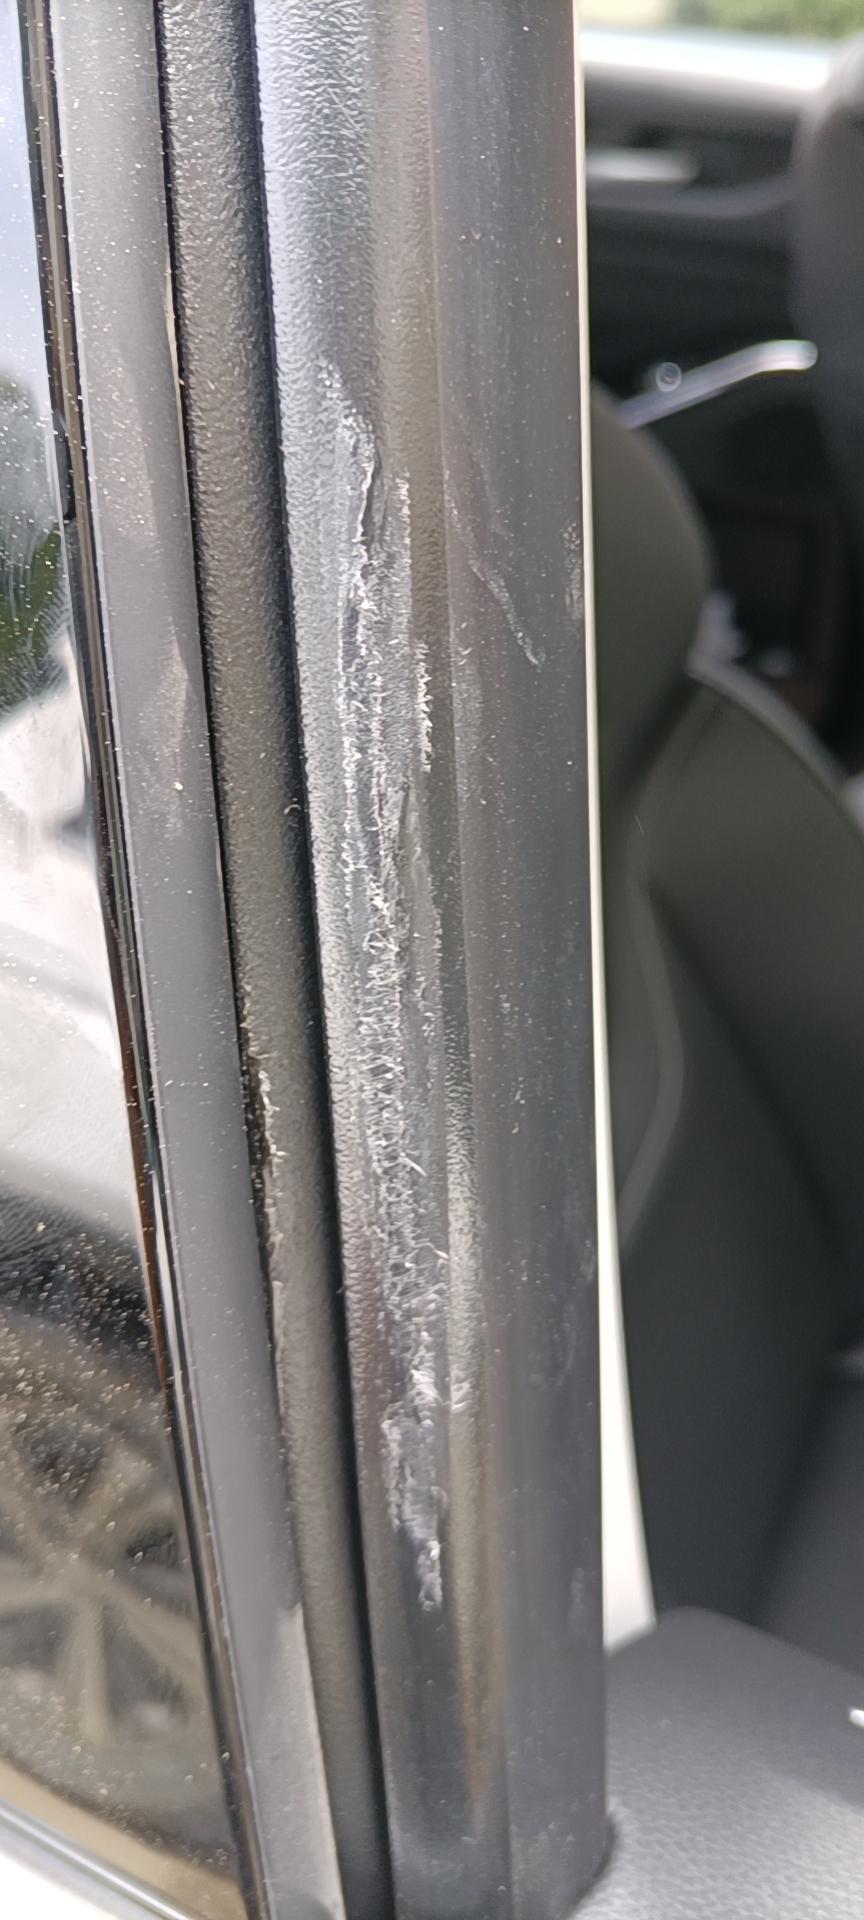 有哈弗H6车主知道这是什么原因造成的吗？贴完车膜今天开窗发现有磨损